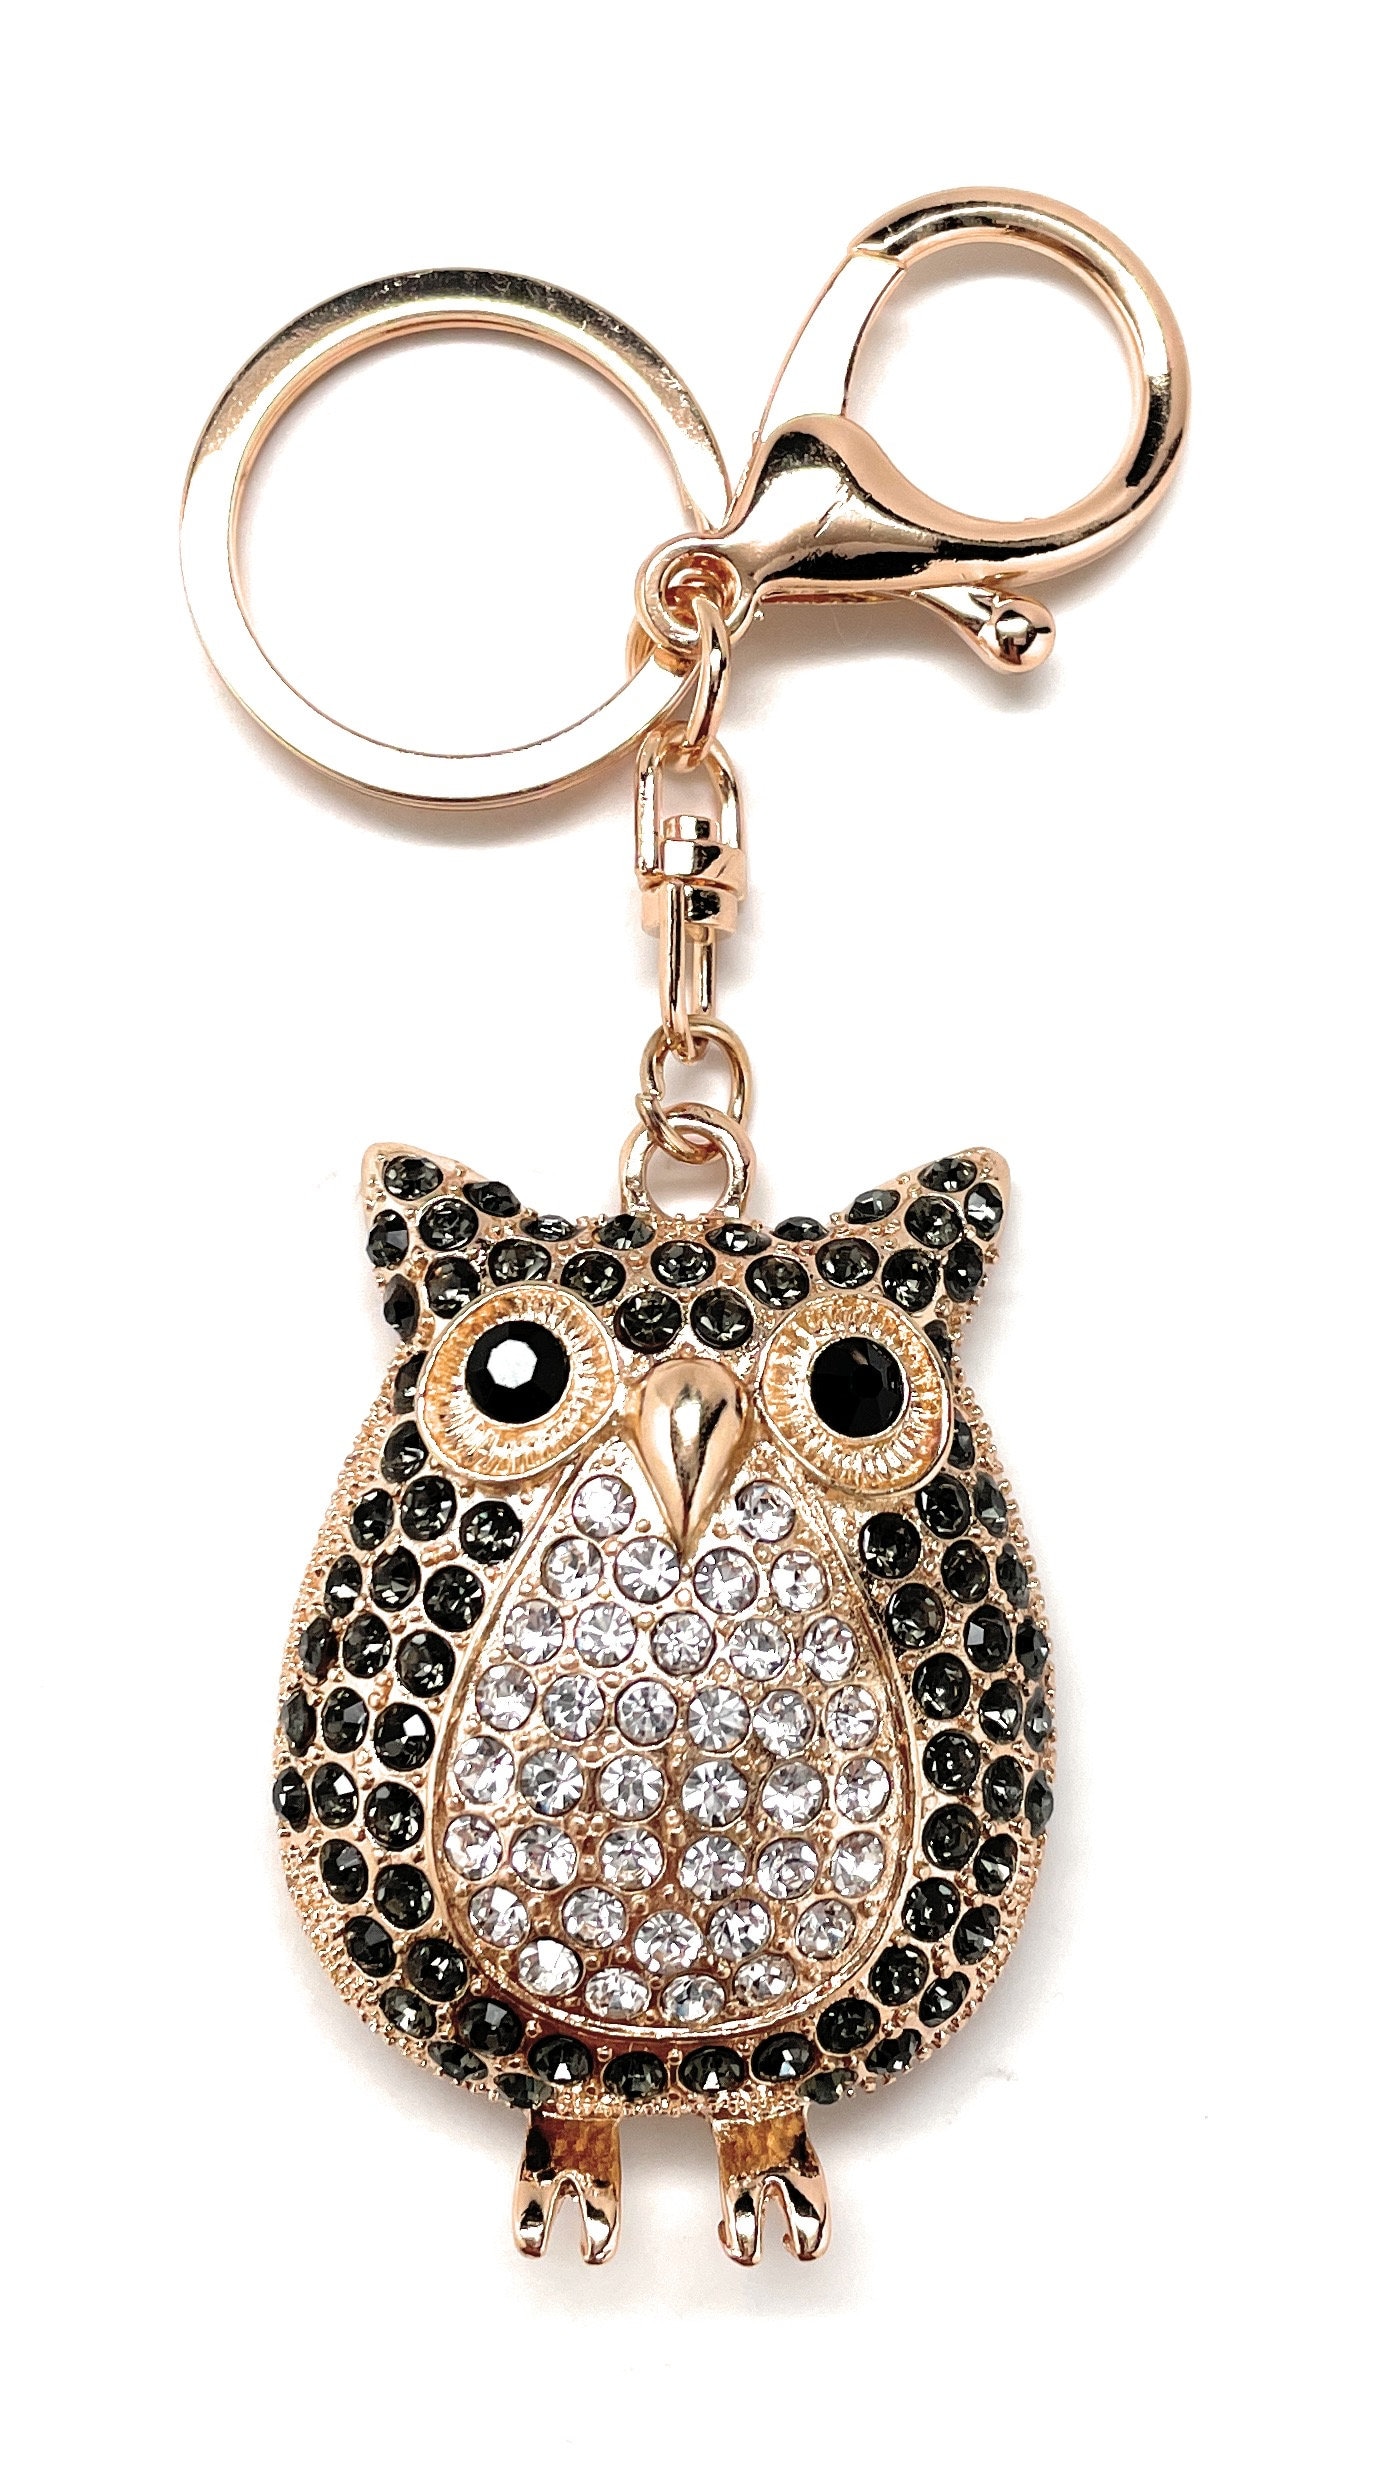 Beautiful Owl Rhinestone Key Chain Crystal Purse Keychain Bag Key